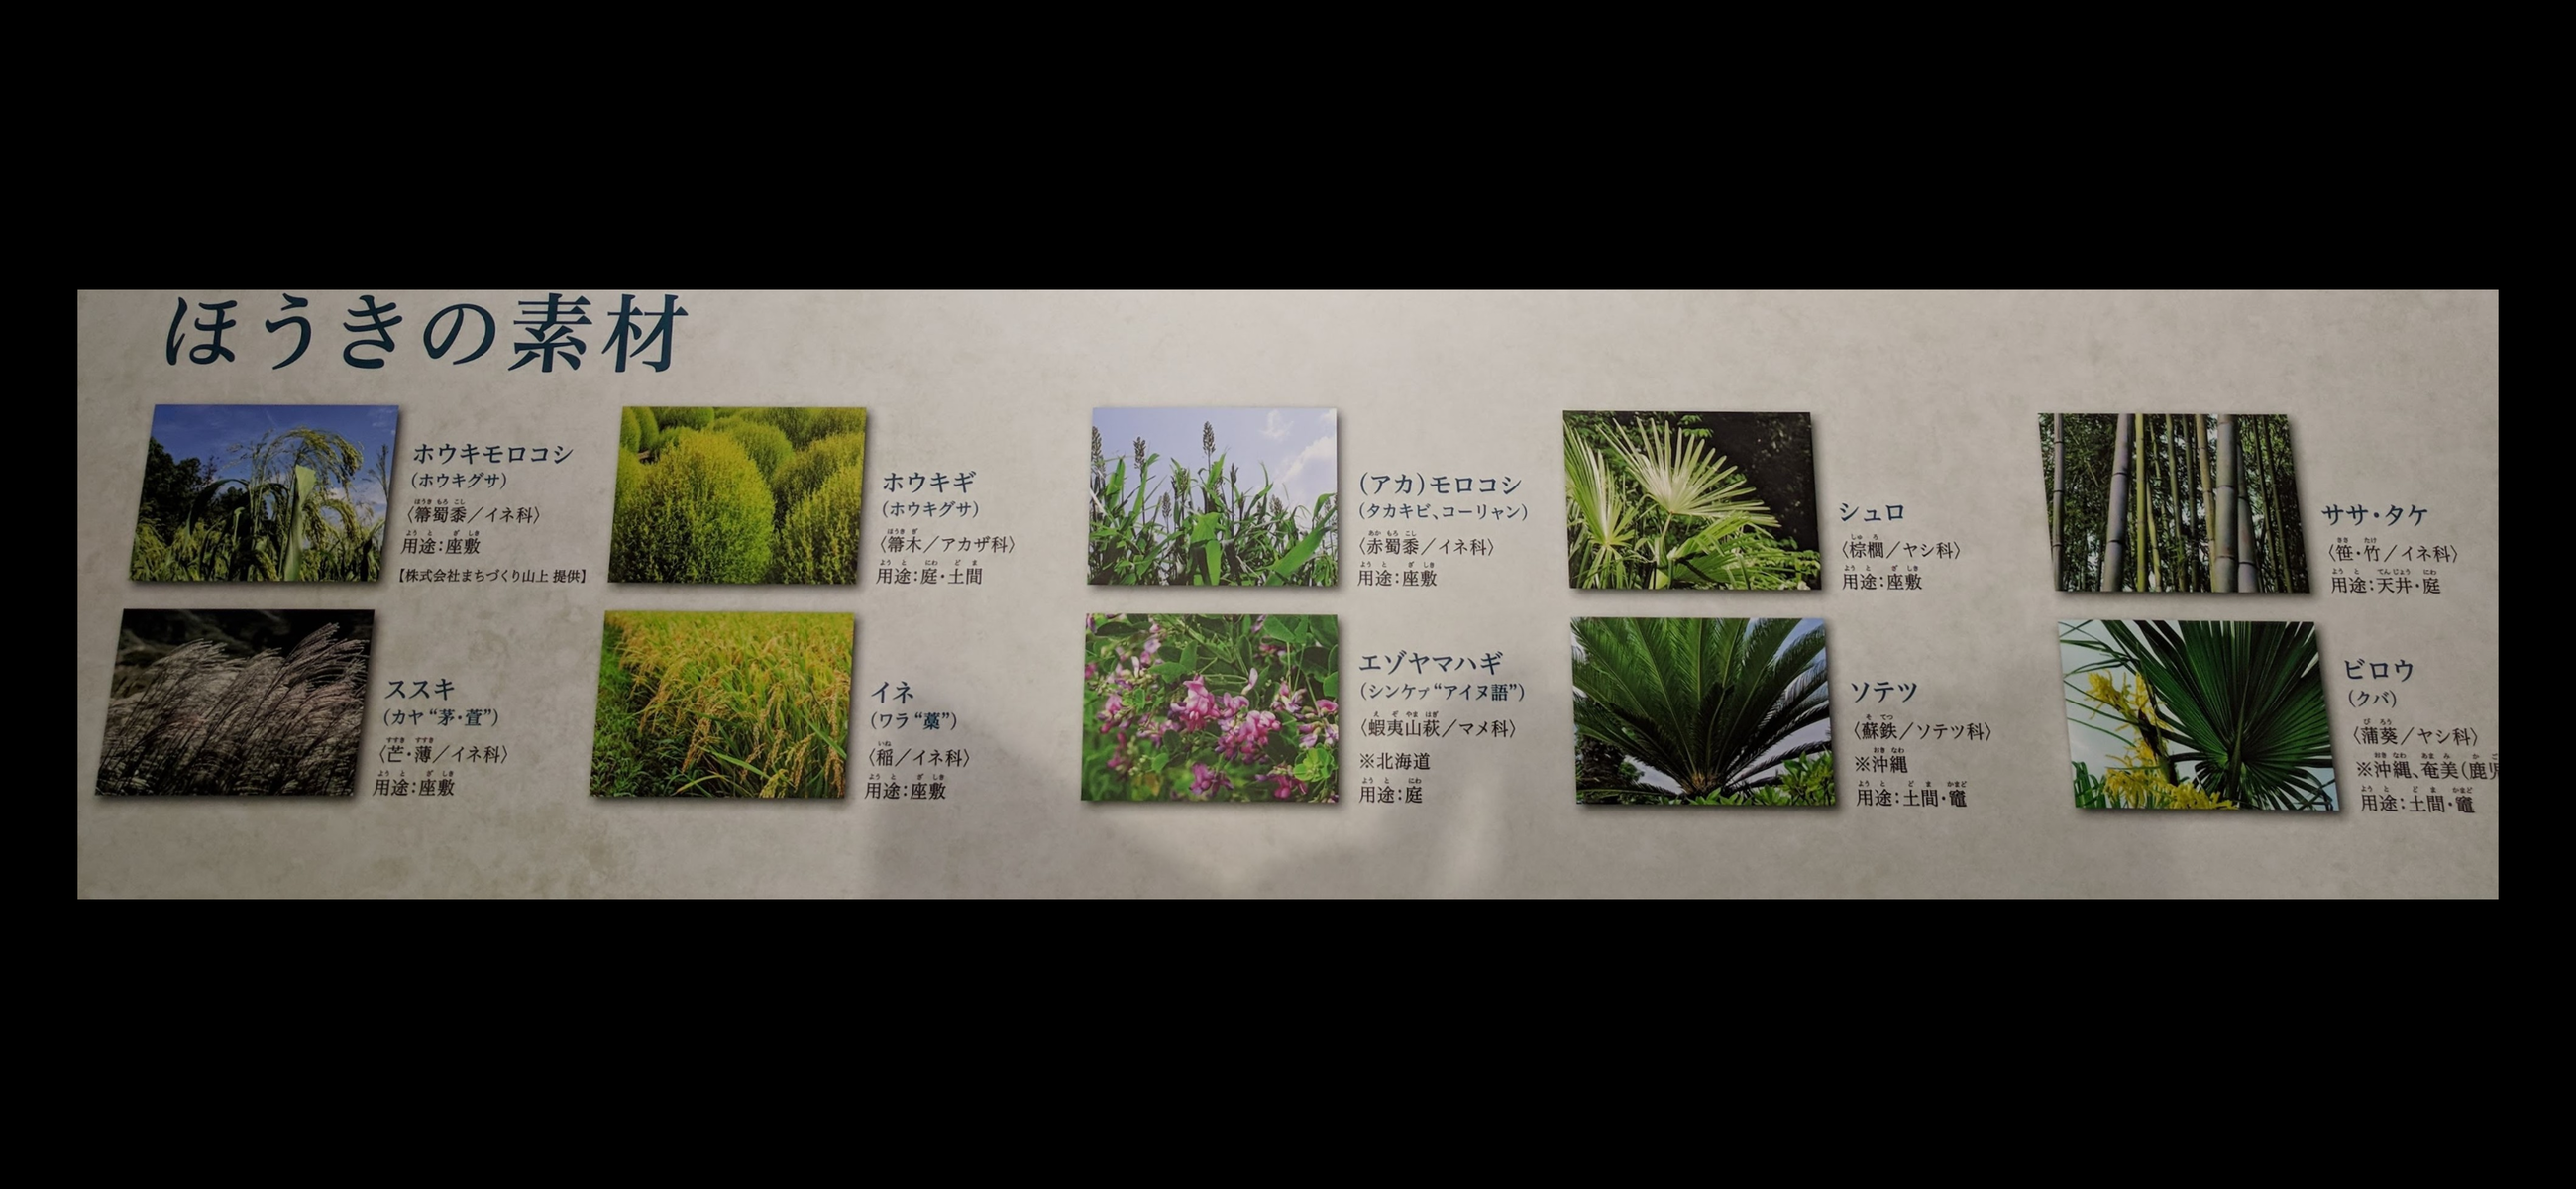 箱館山コキアパーク 滋賀県高島郡 コキア ほうき草で 種はとんぶり 畑のキャビア あんなところ のお掃除